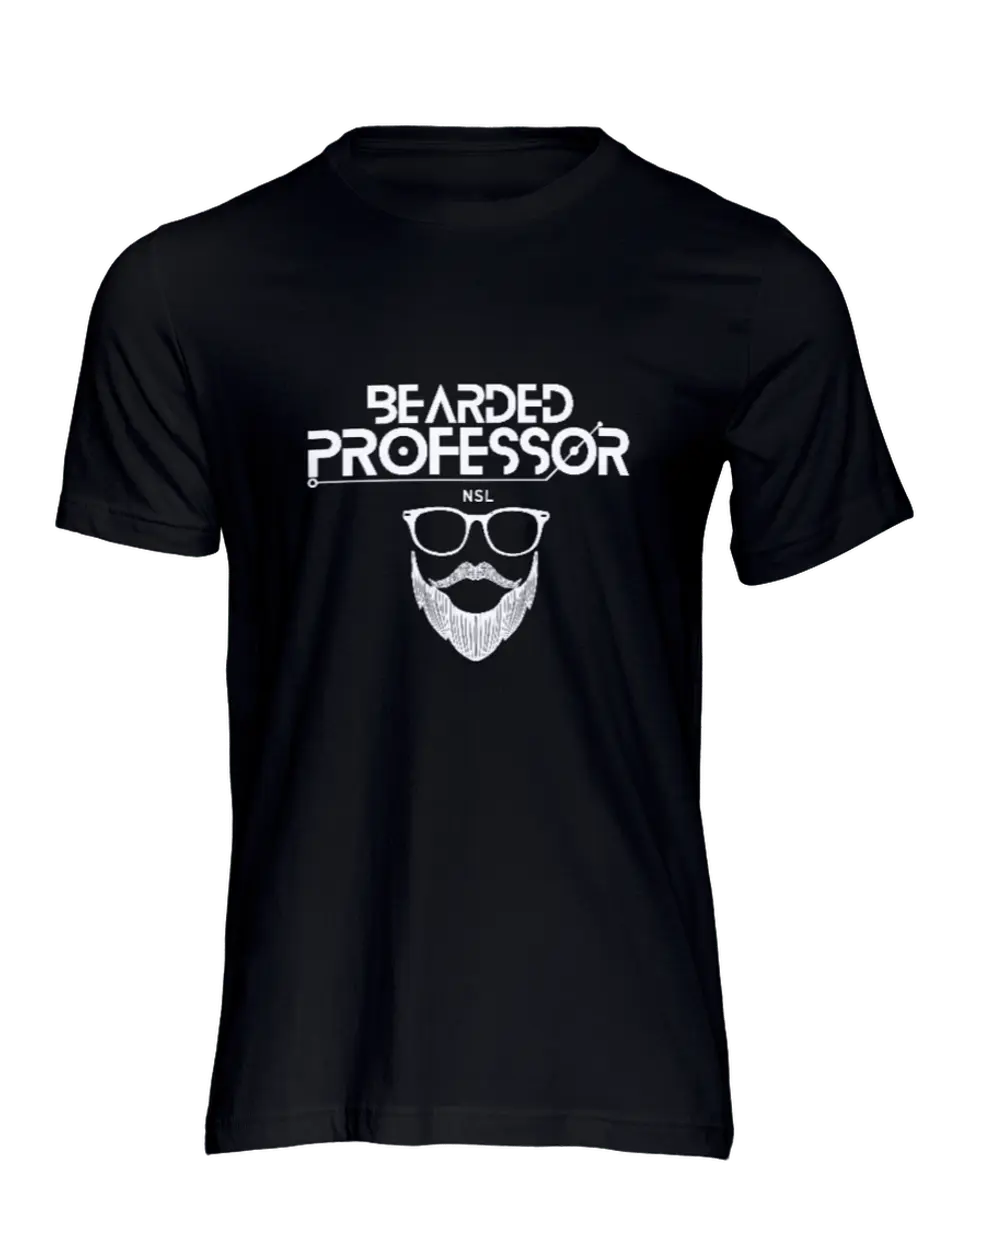 Bearded Professor Black Men's T-Shirt|T-Shirt